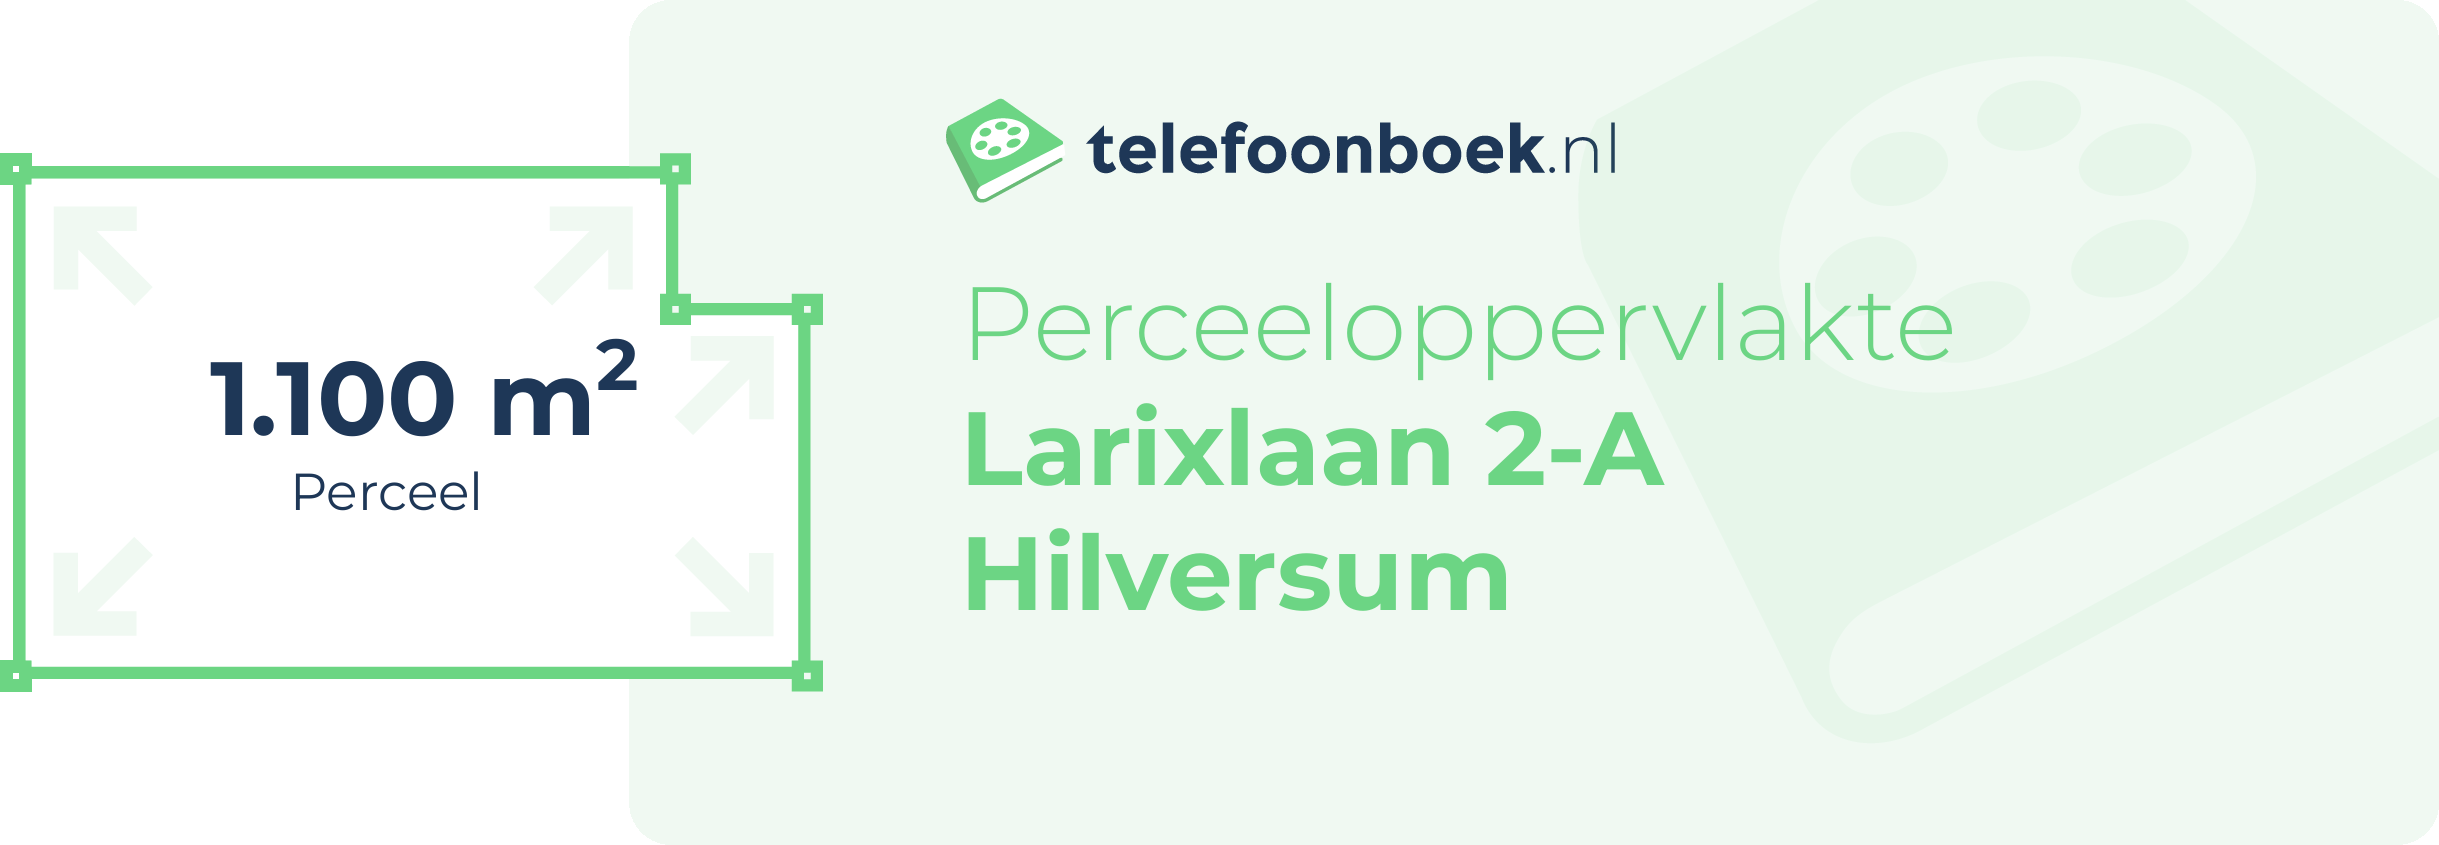 Perceeloppervlakte Larixlaan 2-A Hilversum